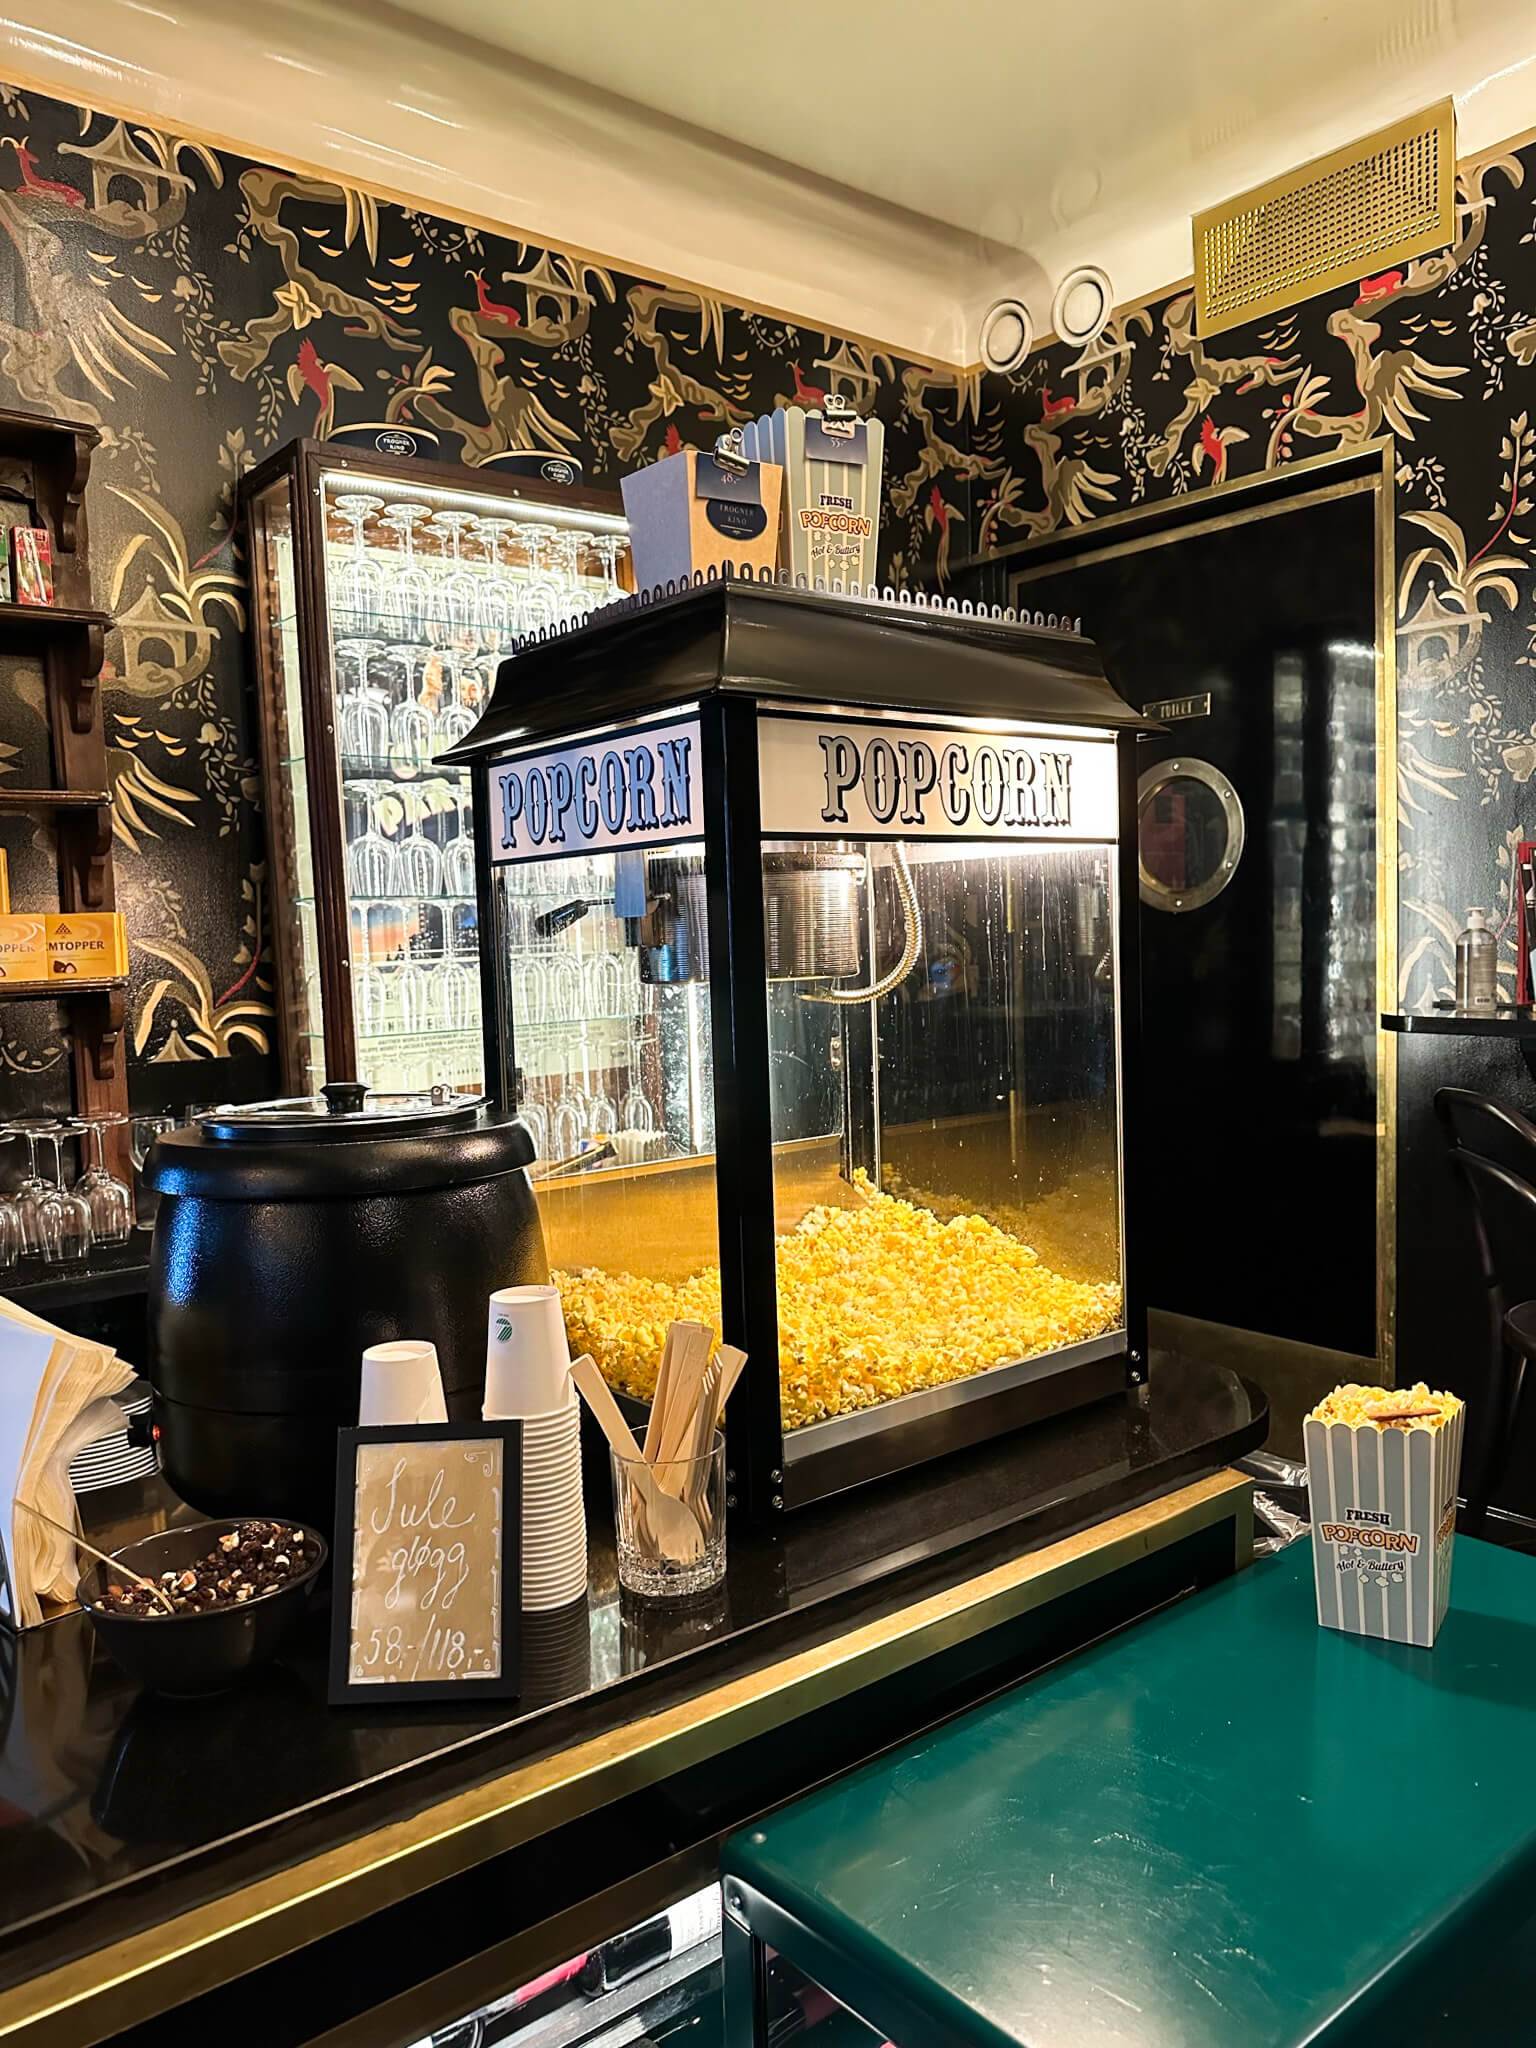 Natürlich darf im Kino das Popcorn nicht fehlen - salzig oder süß?